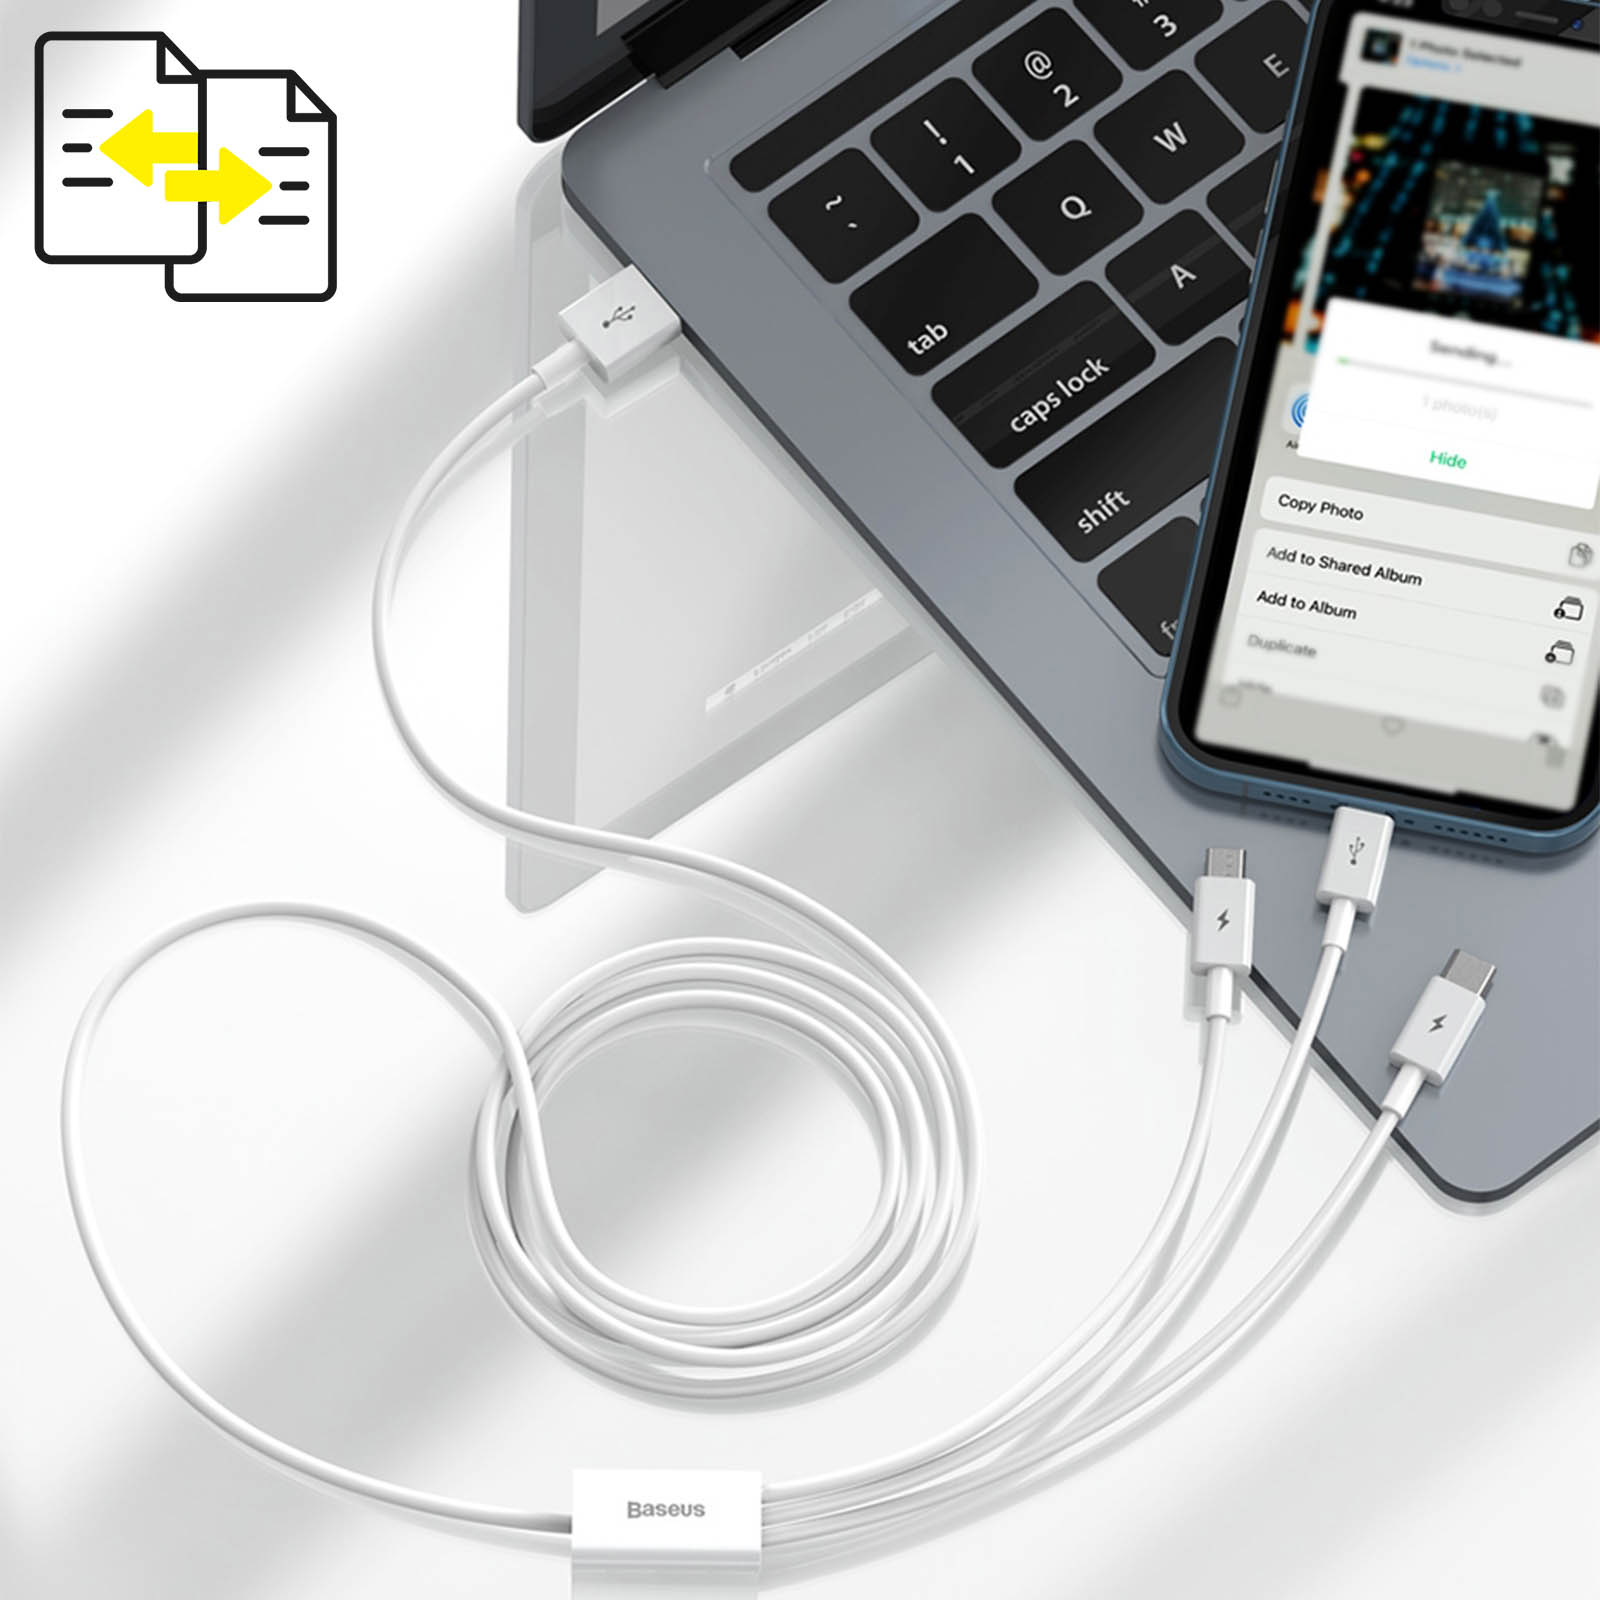 BASEUS 3in1 USB Ladekabel Kabel